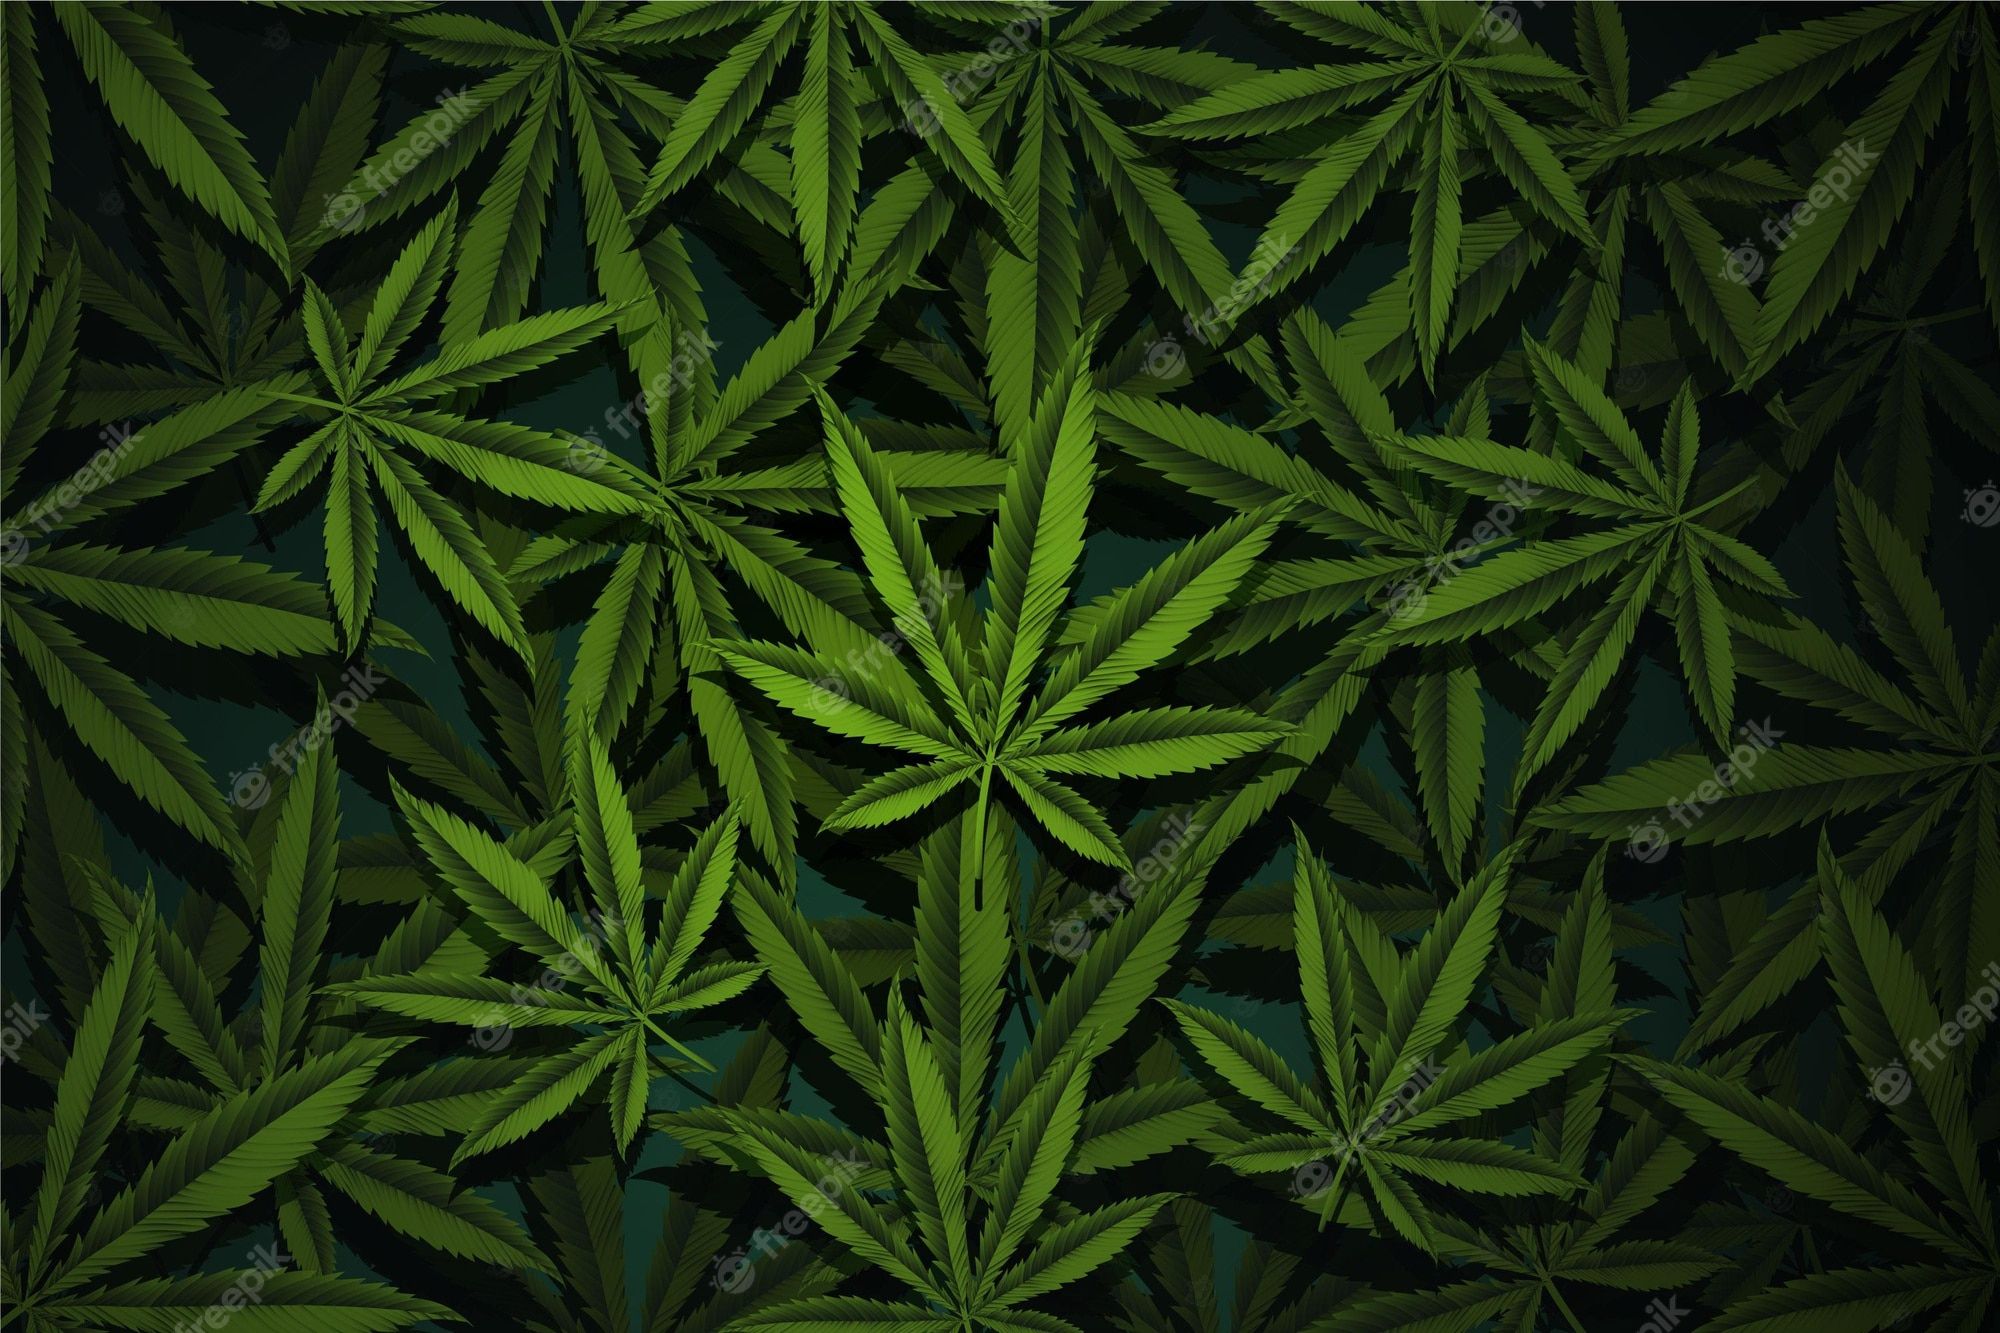  Weed Hintergrundbild 2000x1333. Cannabis Wallpaper Bilder Download auf Freepik